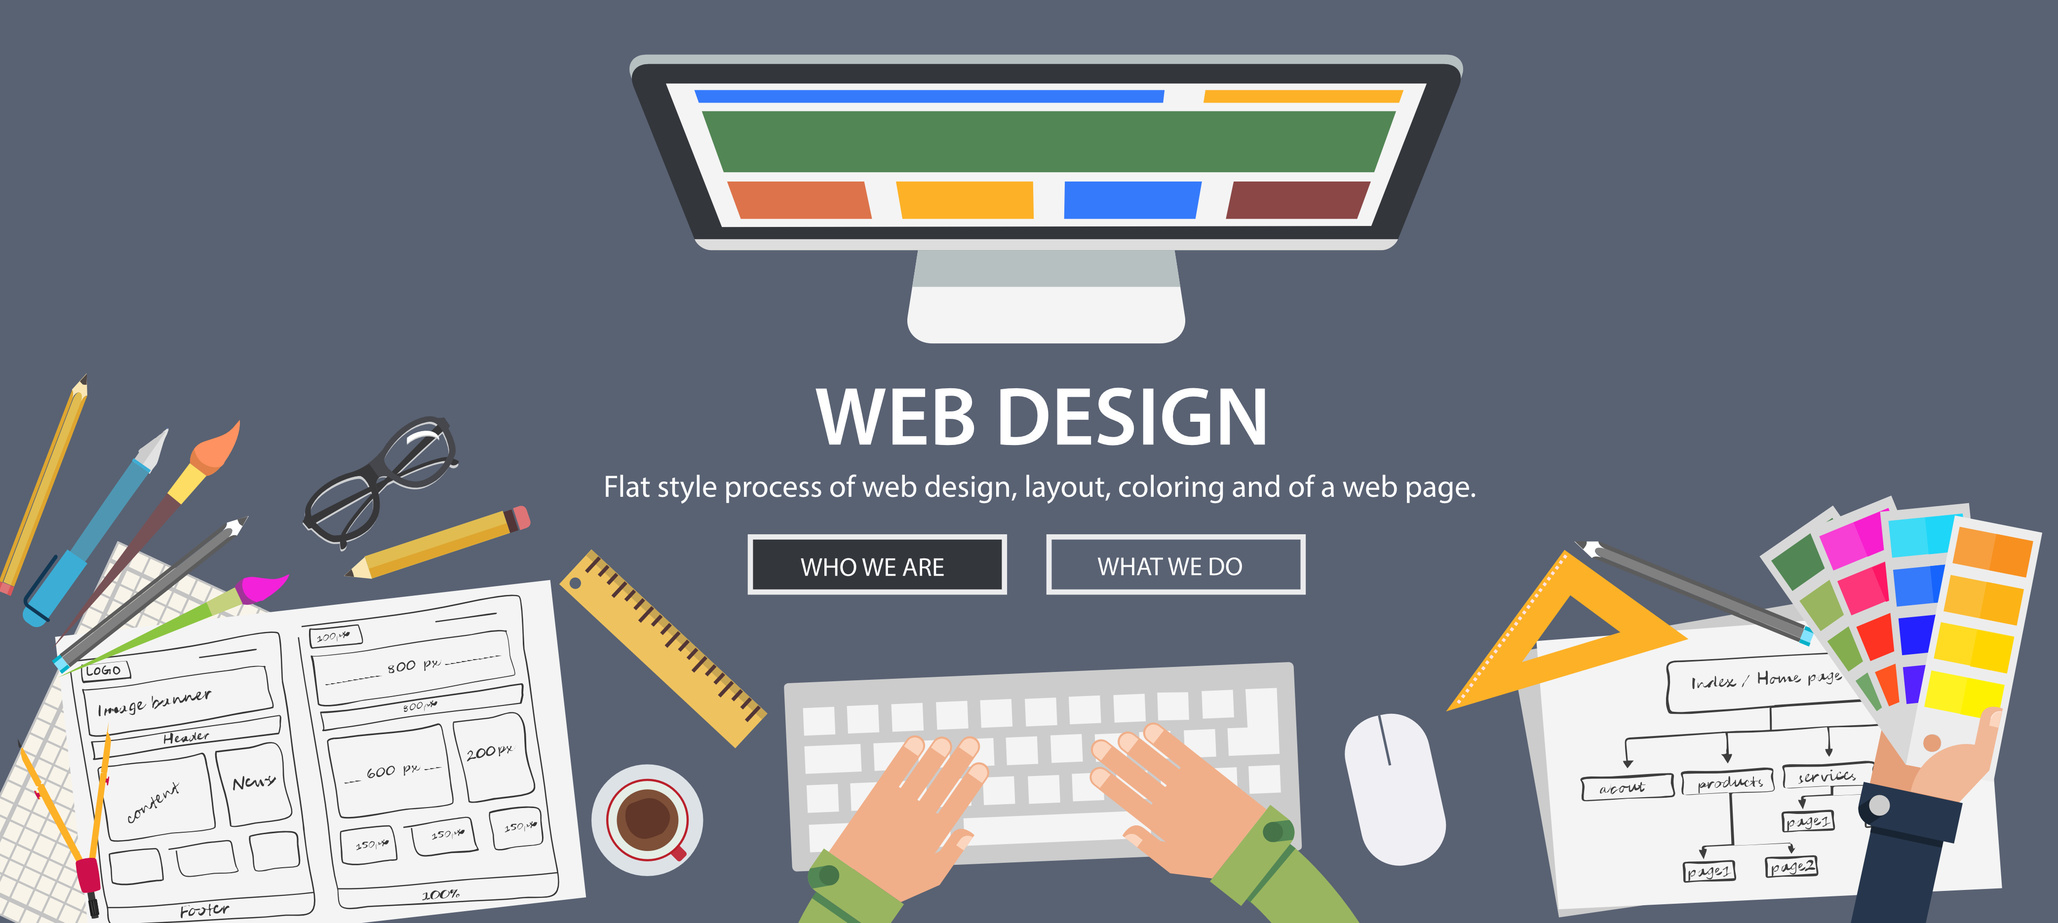 Web design is. Web дизайн. Web dizayn. Плоский дизайн в веб дизайне. Рисованный стиль в веб дизайне.